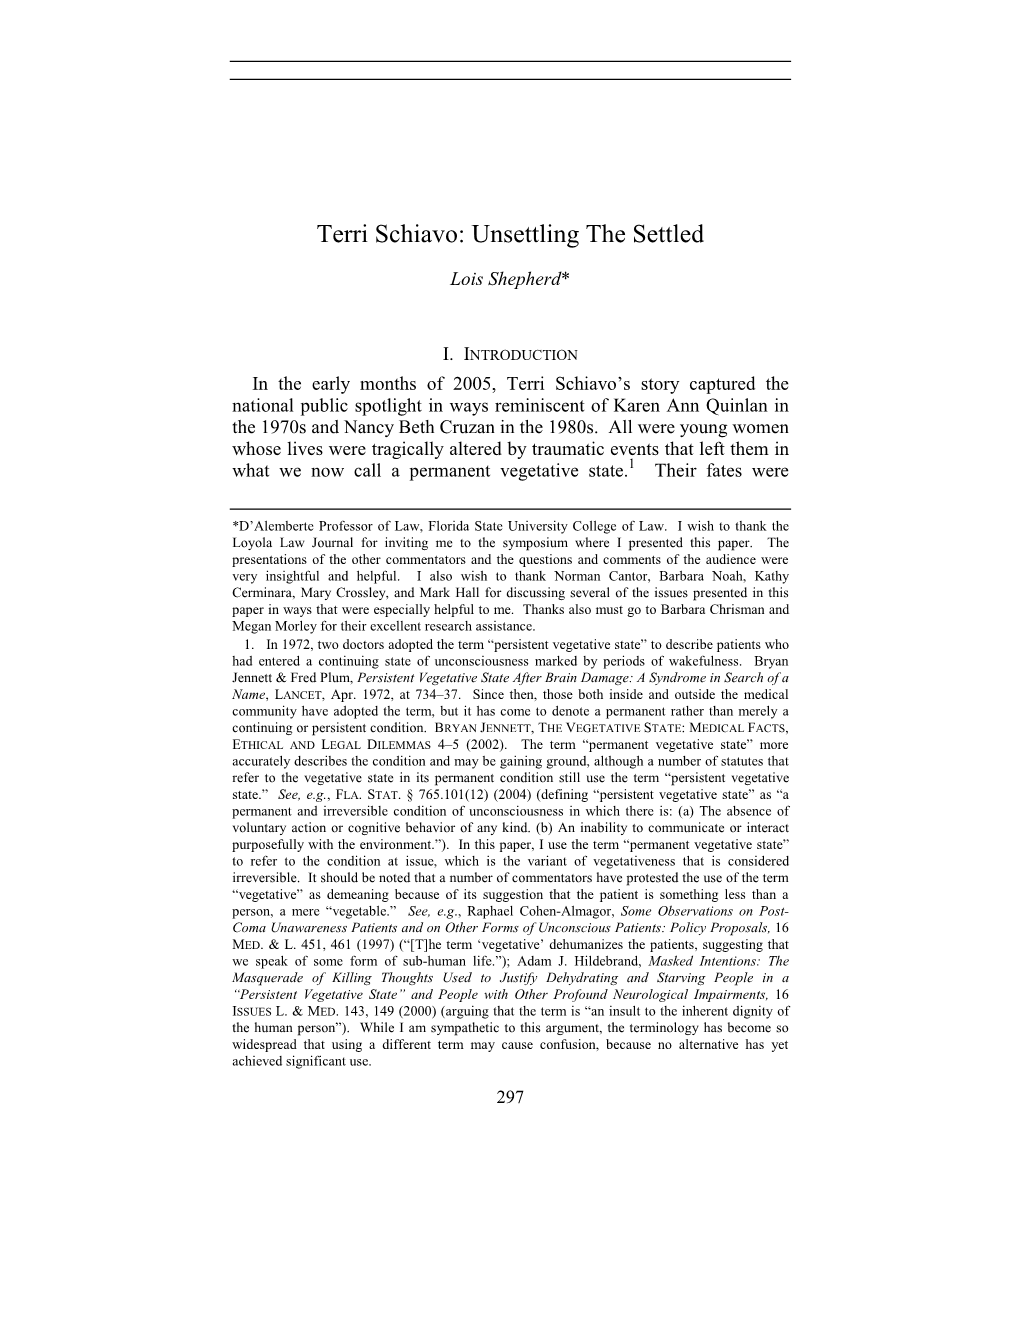 Terri Schiavo: Unsettling the Settled